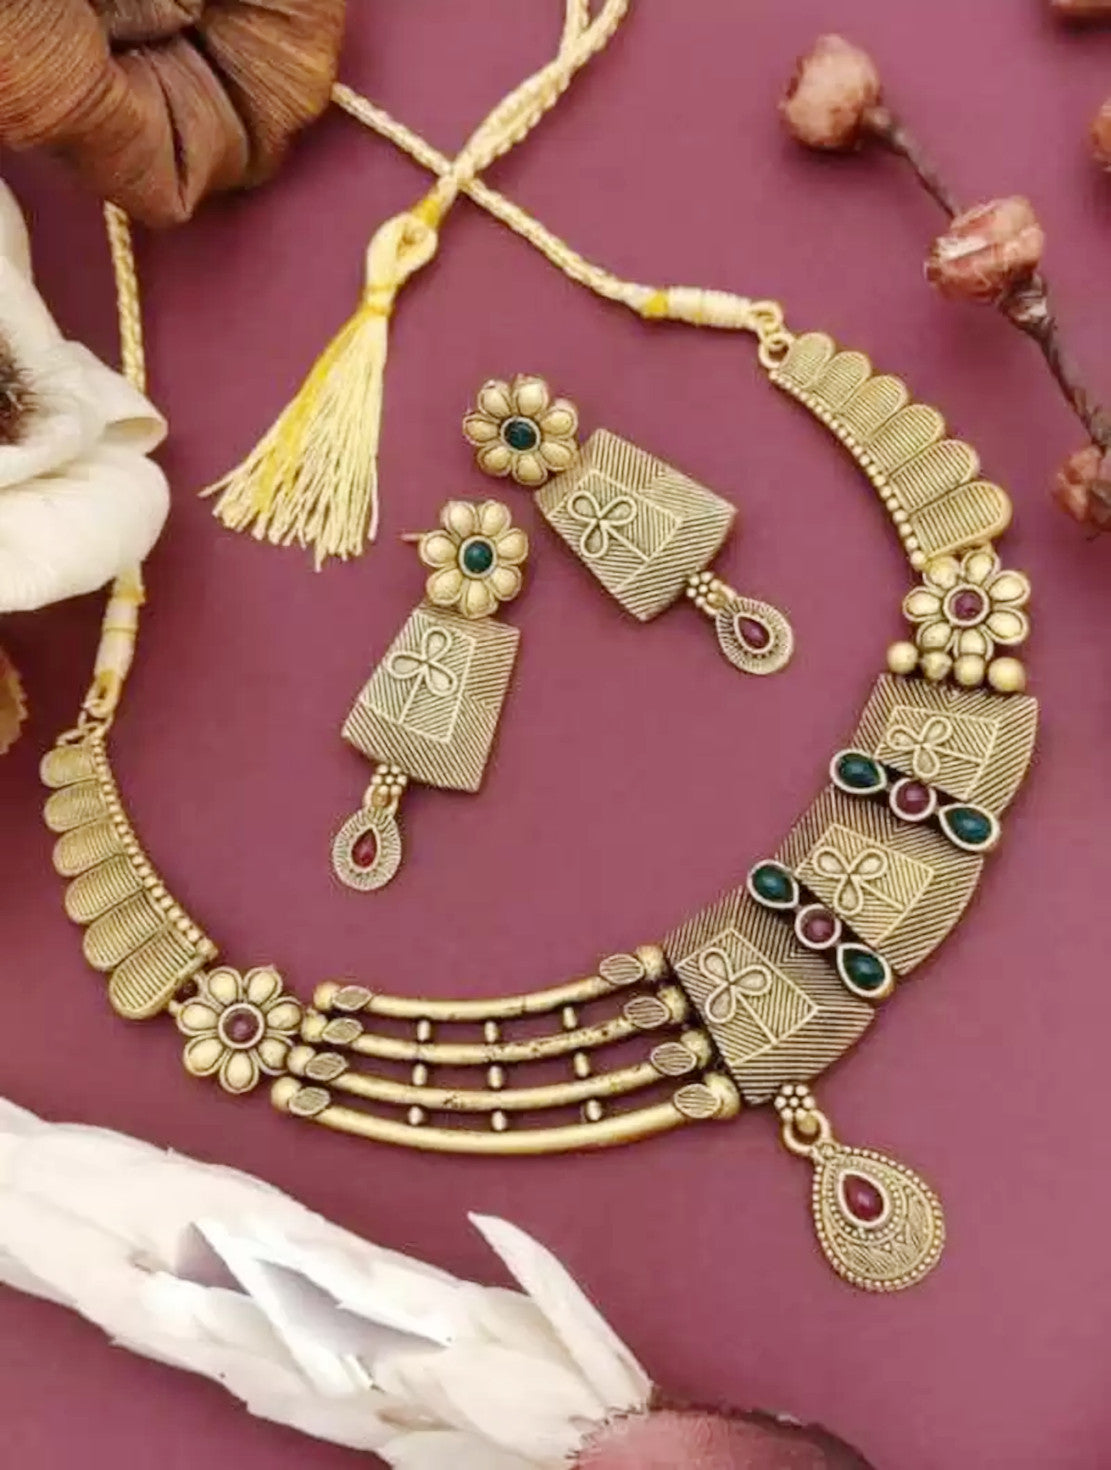 Mekkna Women's Pride Gold Plated Necklace with Earrings | Buy Jewellery online from Mekkna.